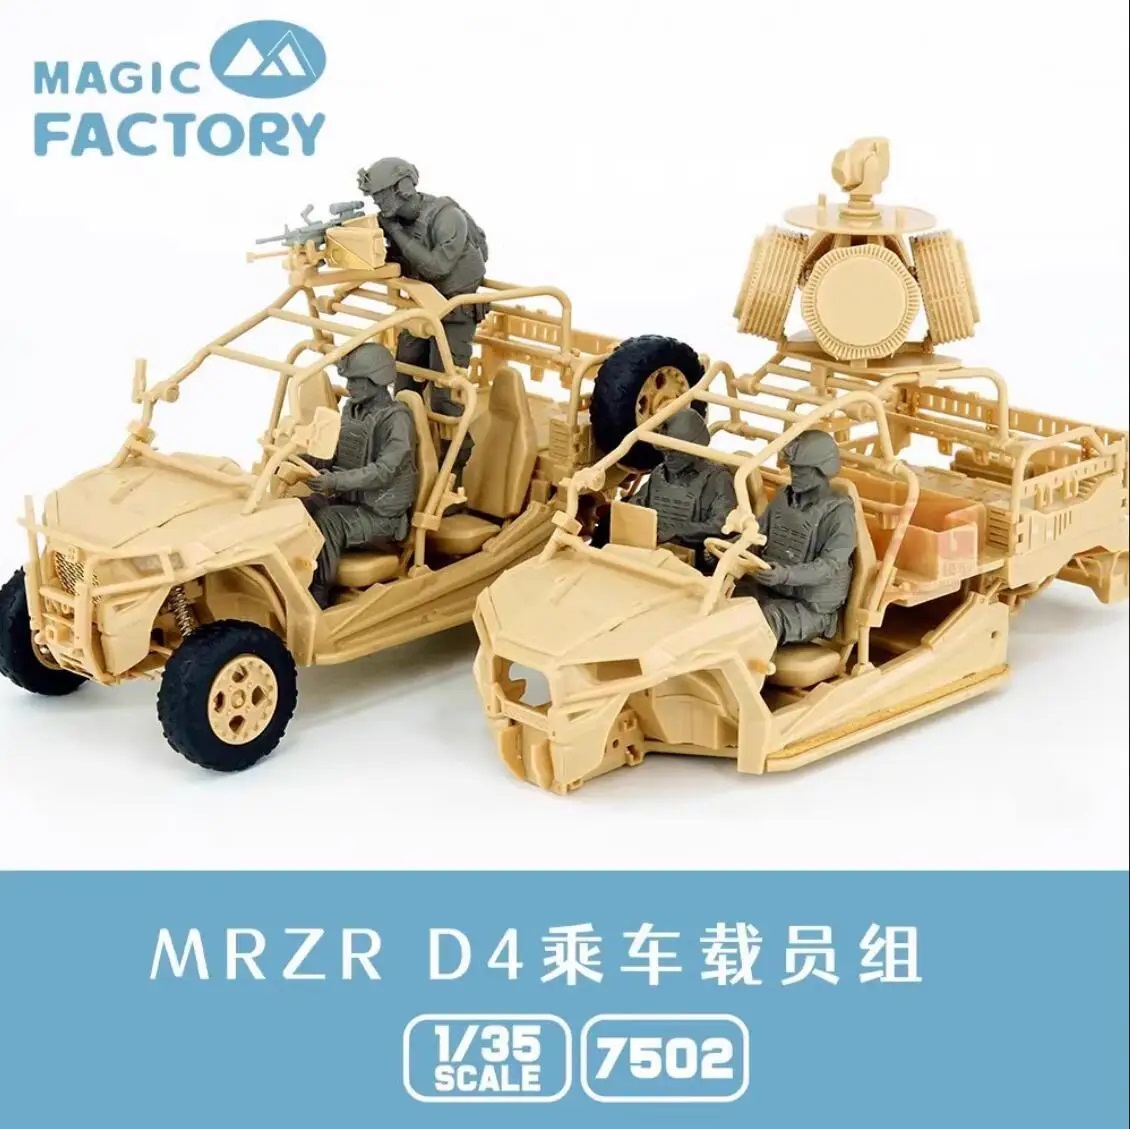 7502  фигуры  USMC MRZR D4 Crew Set (for Magic Factory 2005, USMC MRZR D4)  (1:35)